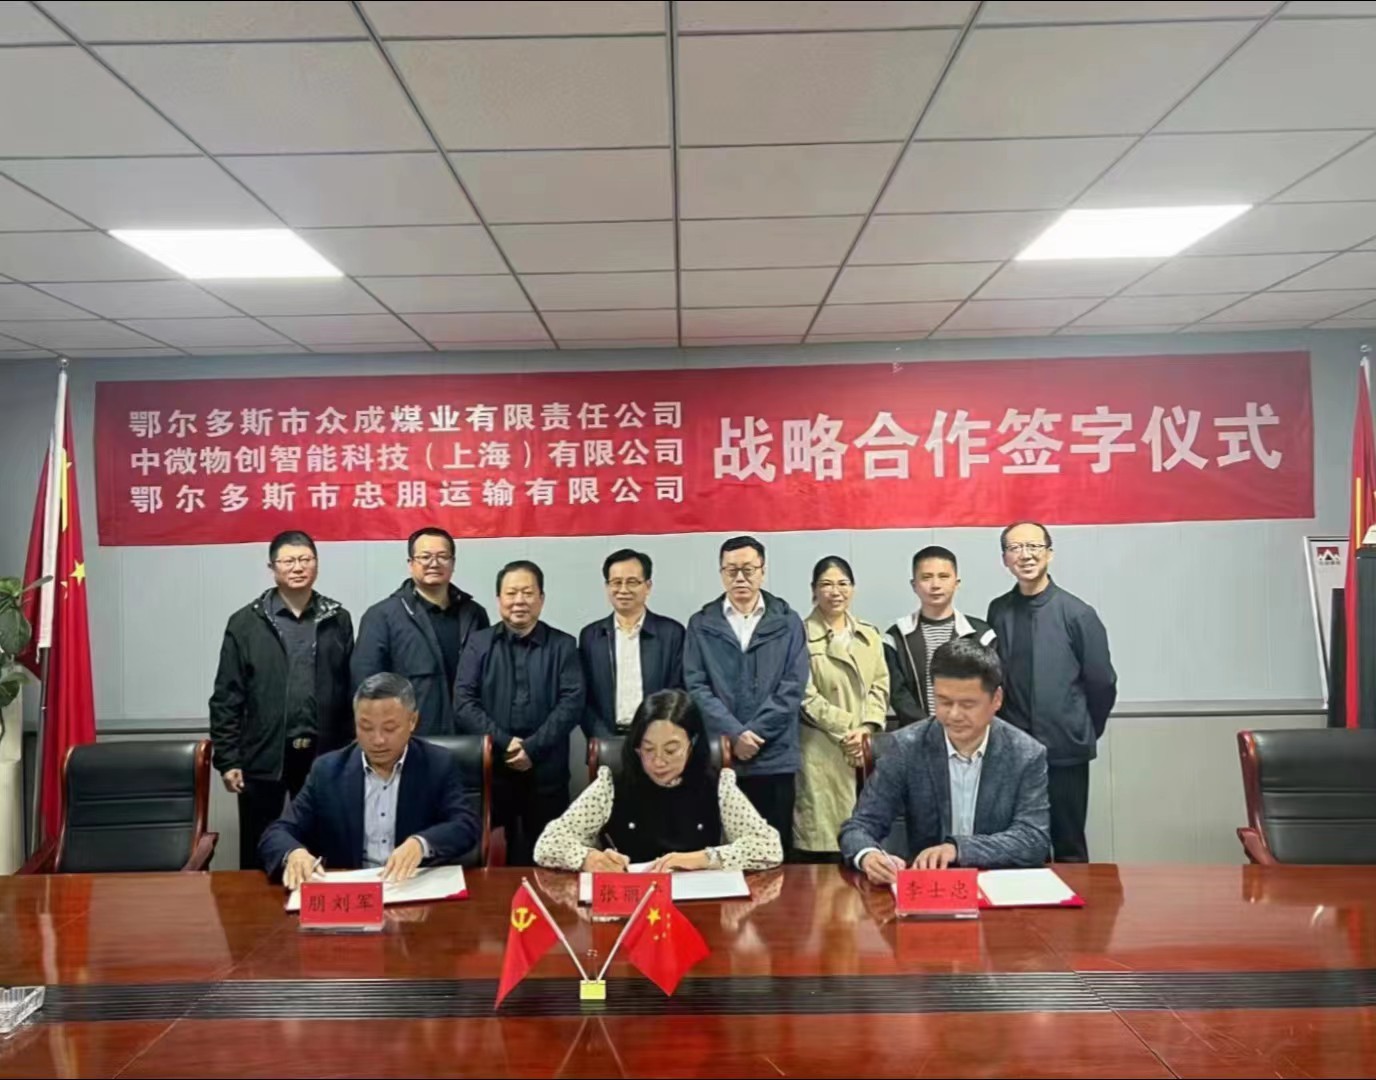 三方戰略協議簽署，將(jiāng)在鄂爾多斯建設布局新能(néng)源重卡自動駕駛應用示範項目